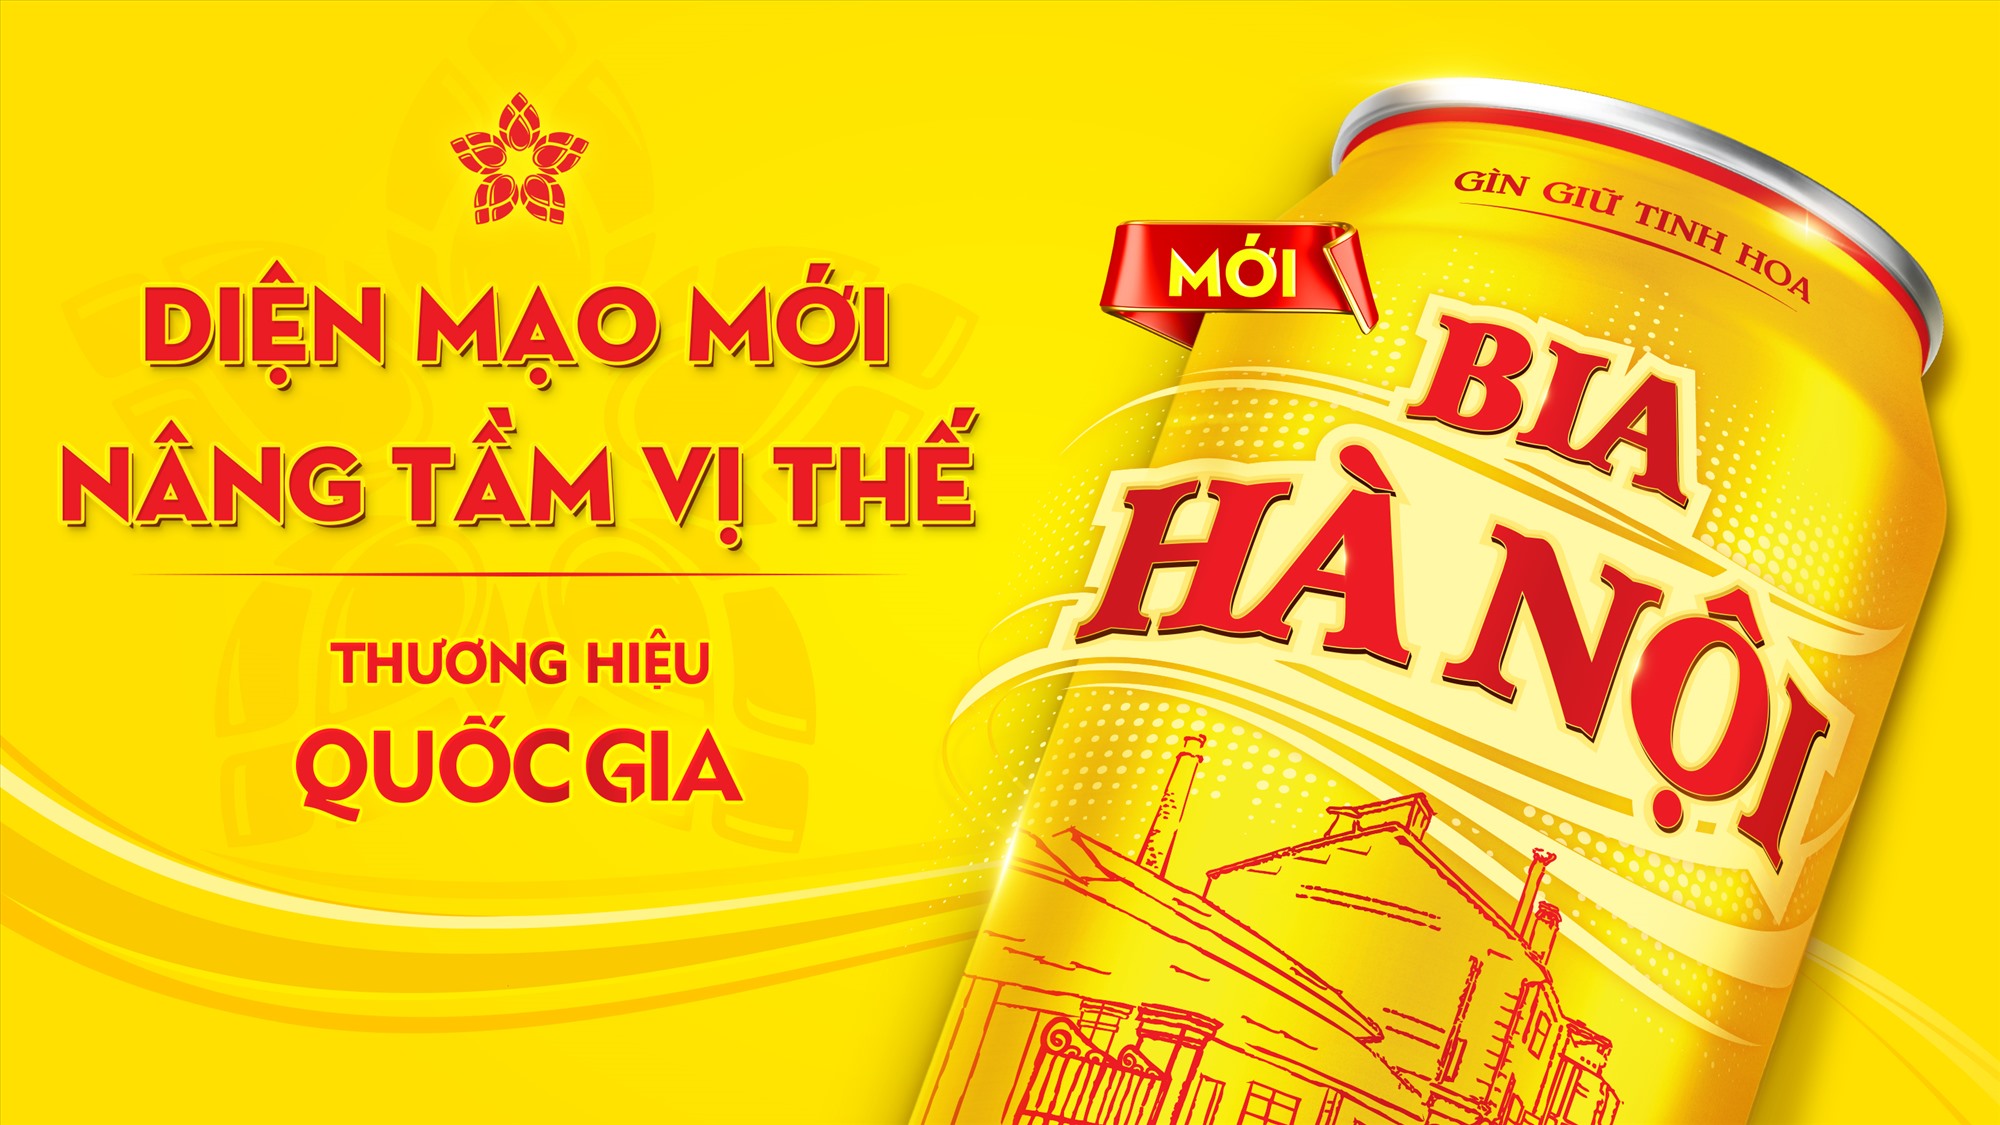 Bia Hà Nội ra mắt nhận diện thương hiệu mới. Nguồn: Habeco 